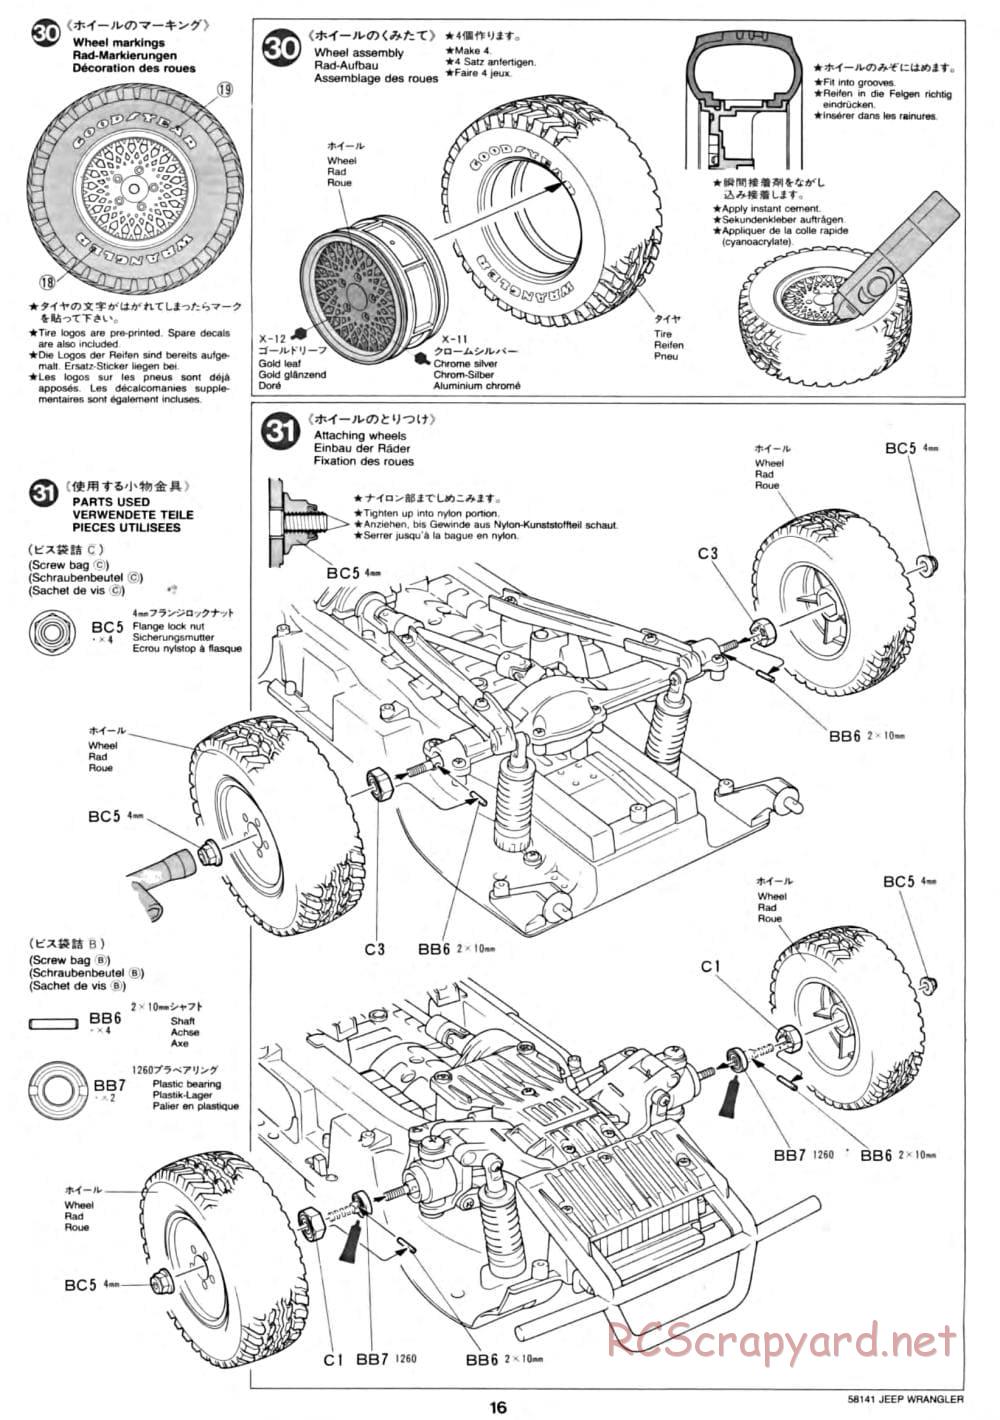 Tamiya - Jeep Wrangler - CC-01 Chassis - Manual - Page 16